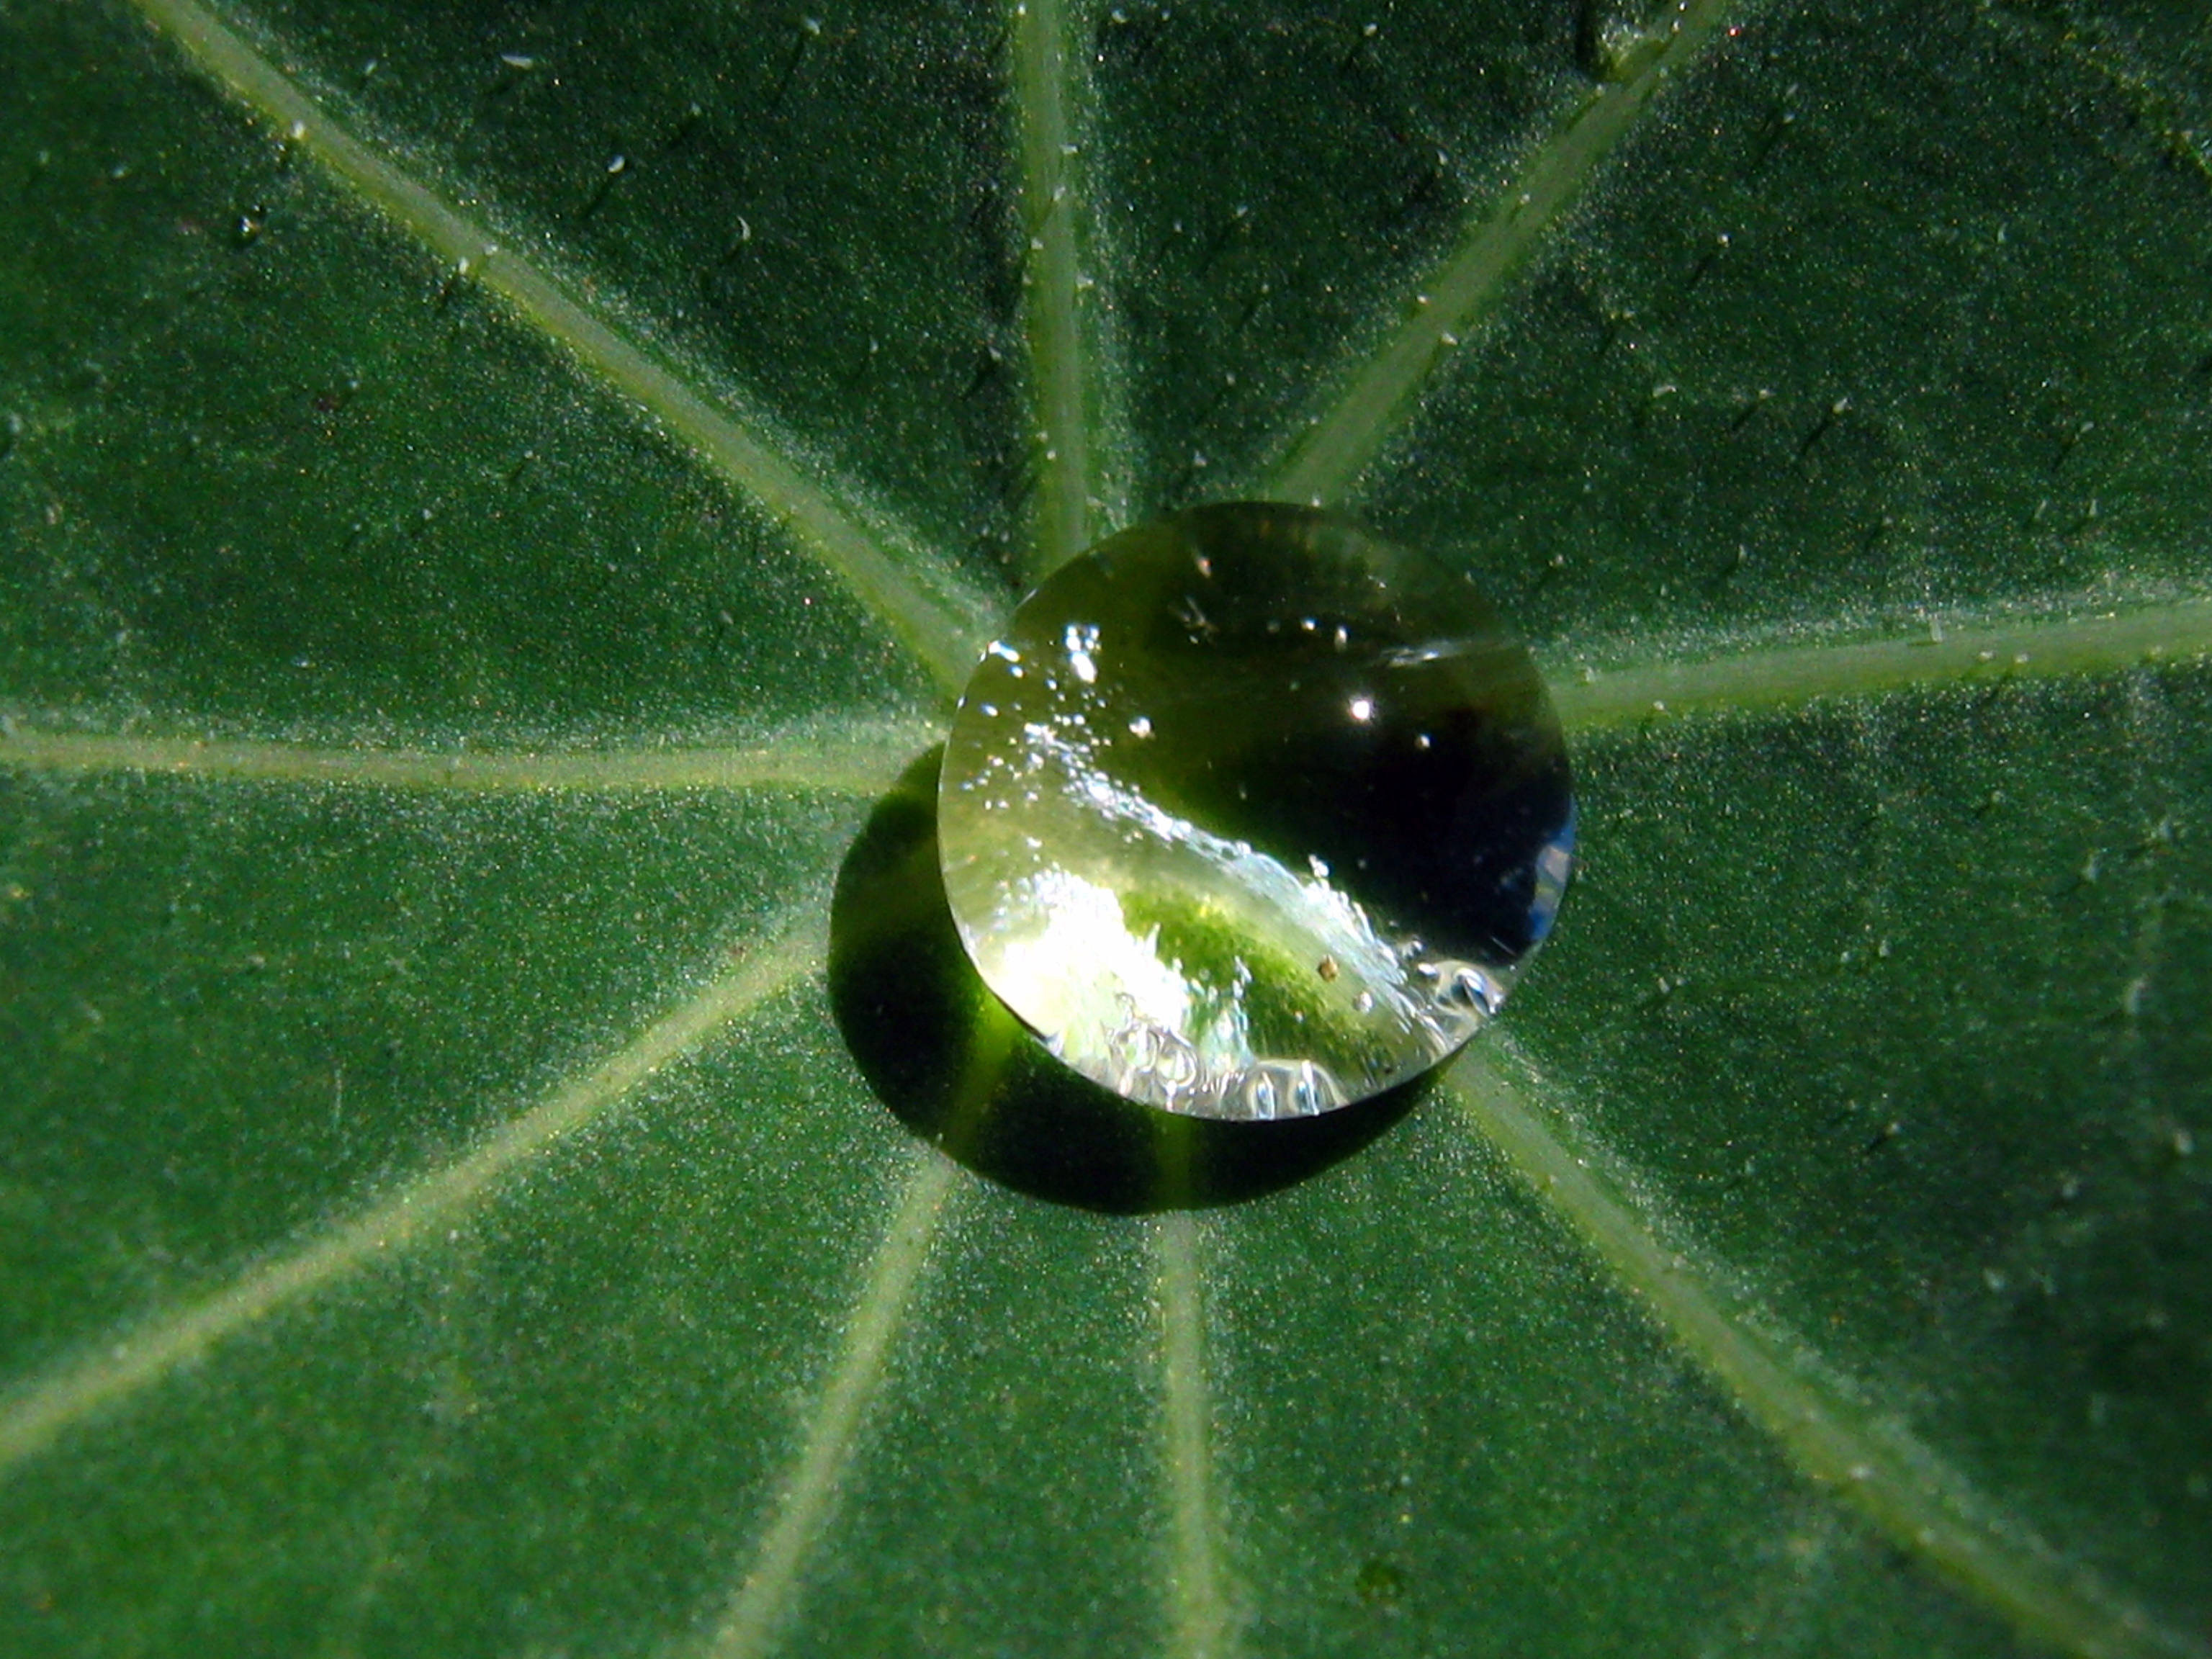 File:Dew on nasturtium leaf.JPG - Wikimedia Commons